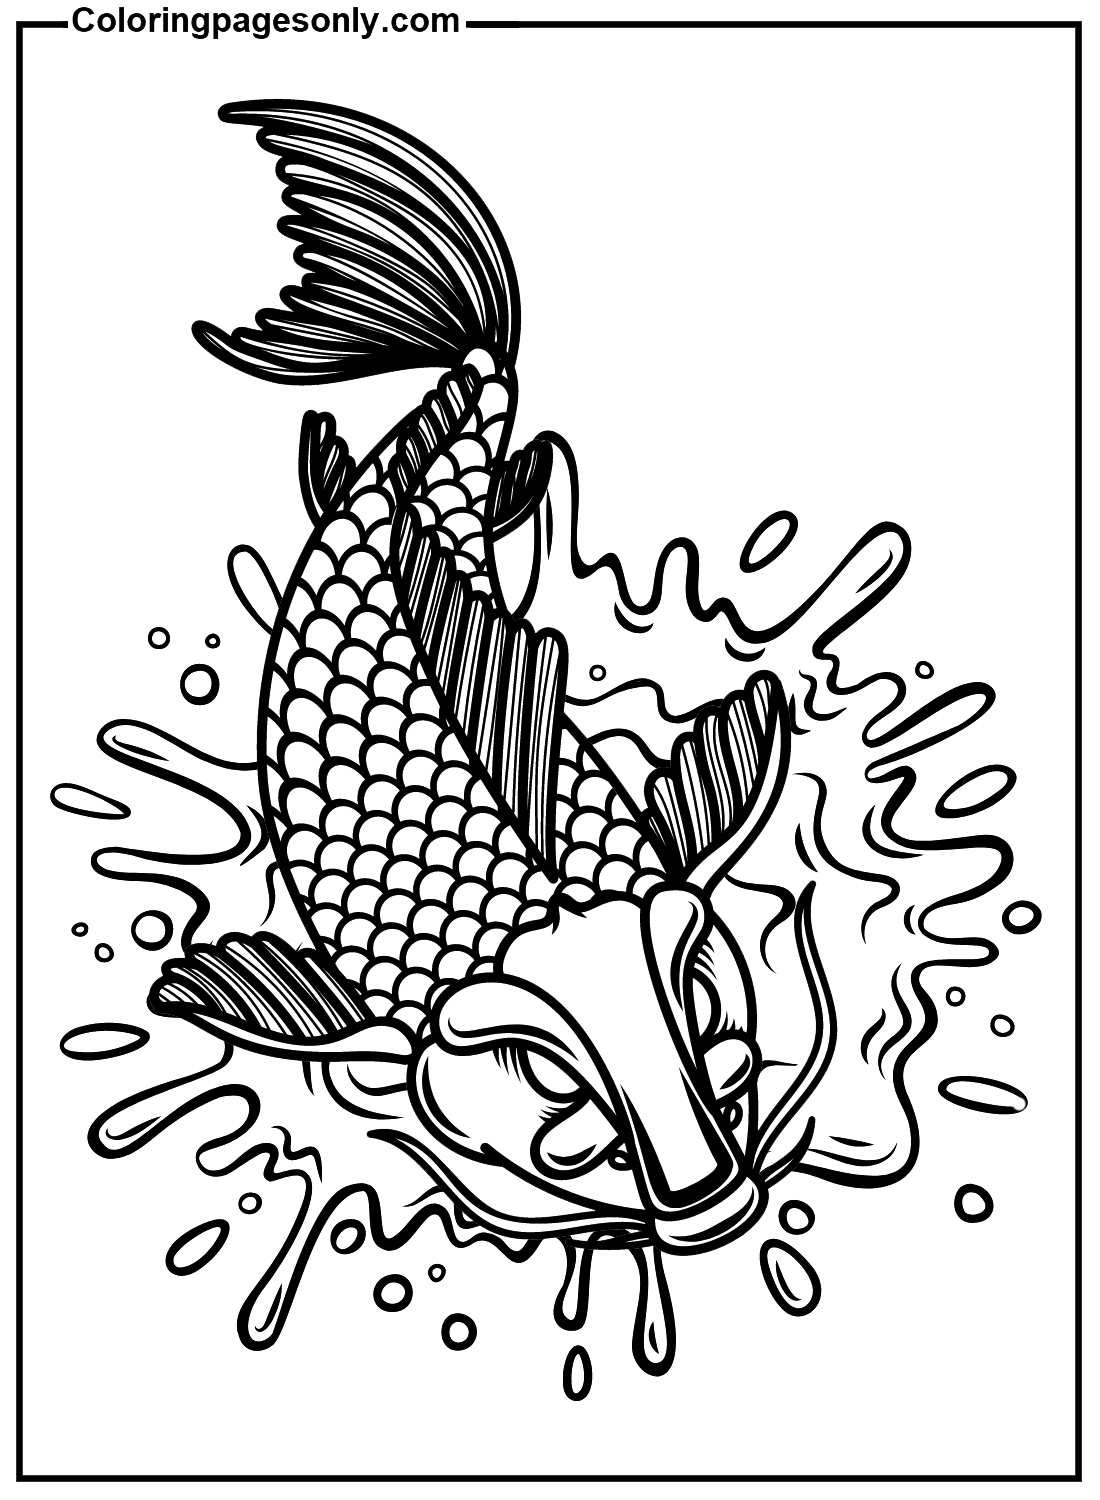 Koi-Fisch-Tattoo von Koi-Fisch